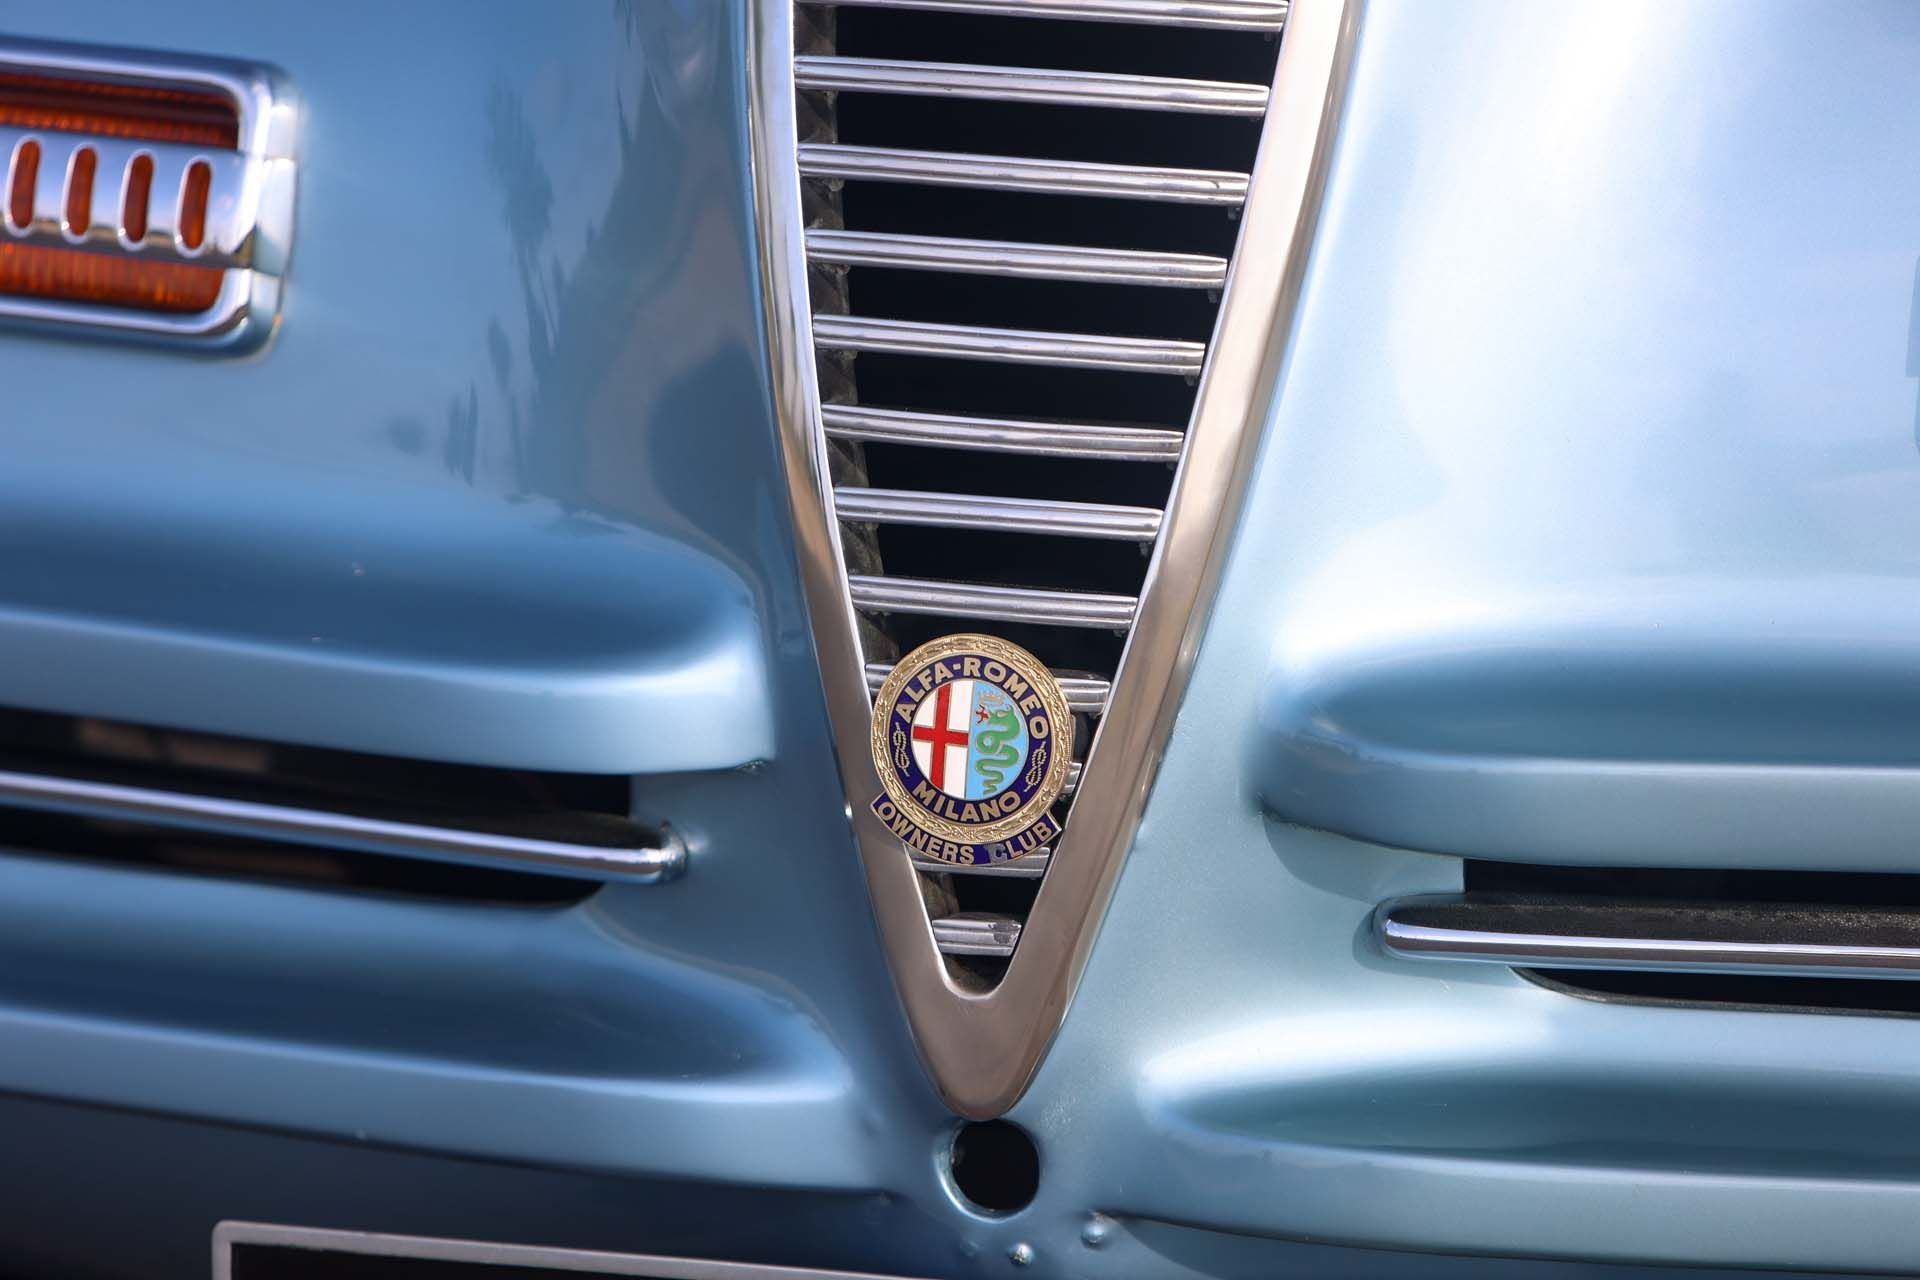 For Sale 1947 Alfa Romeo 6C 2500 Sport Pinin Farina Cabriolet